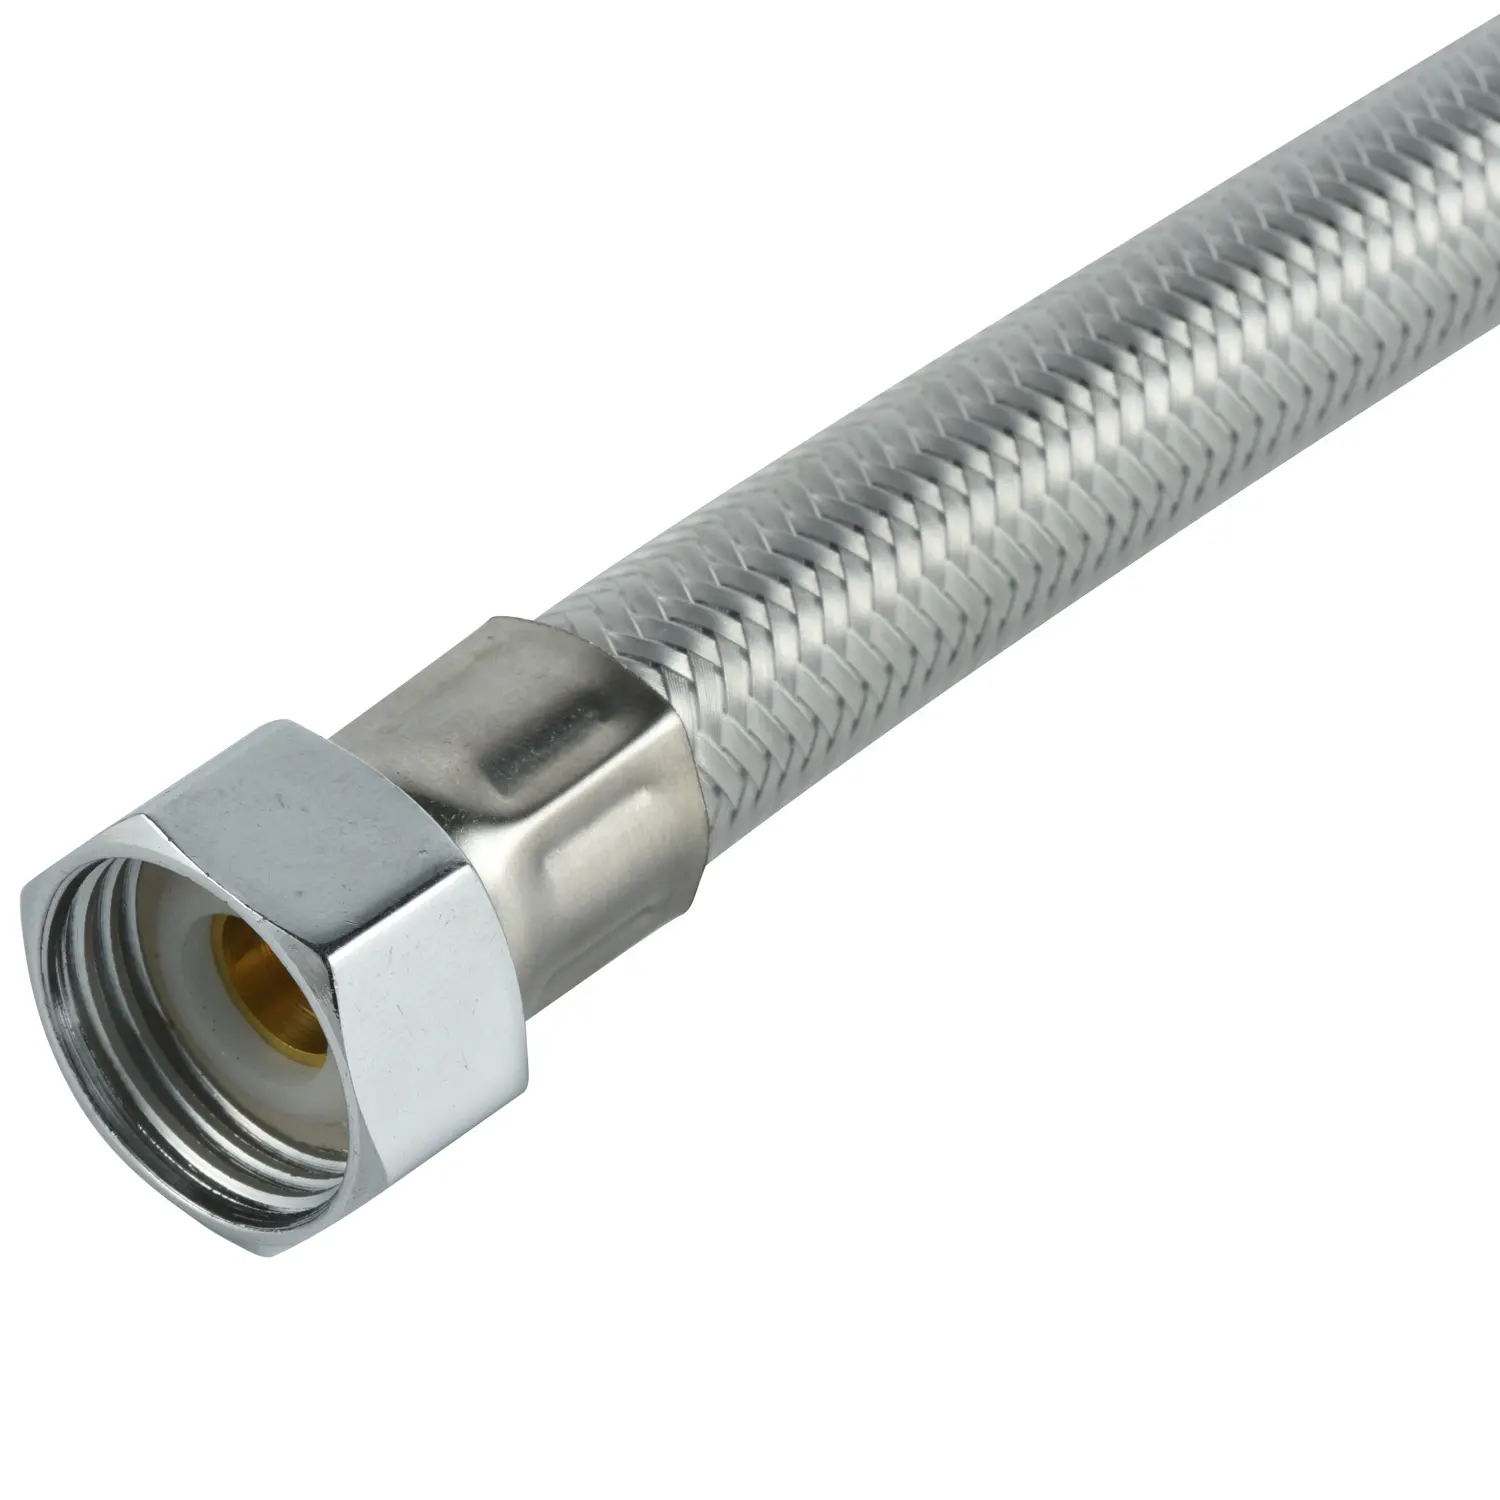 Tubo di collegamento personalizzato filo di acciaio inossidabile tubo flessibile intrecciato in gomma metallica flessibile tubo flessibile intrecciato